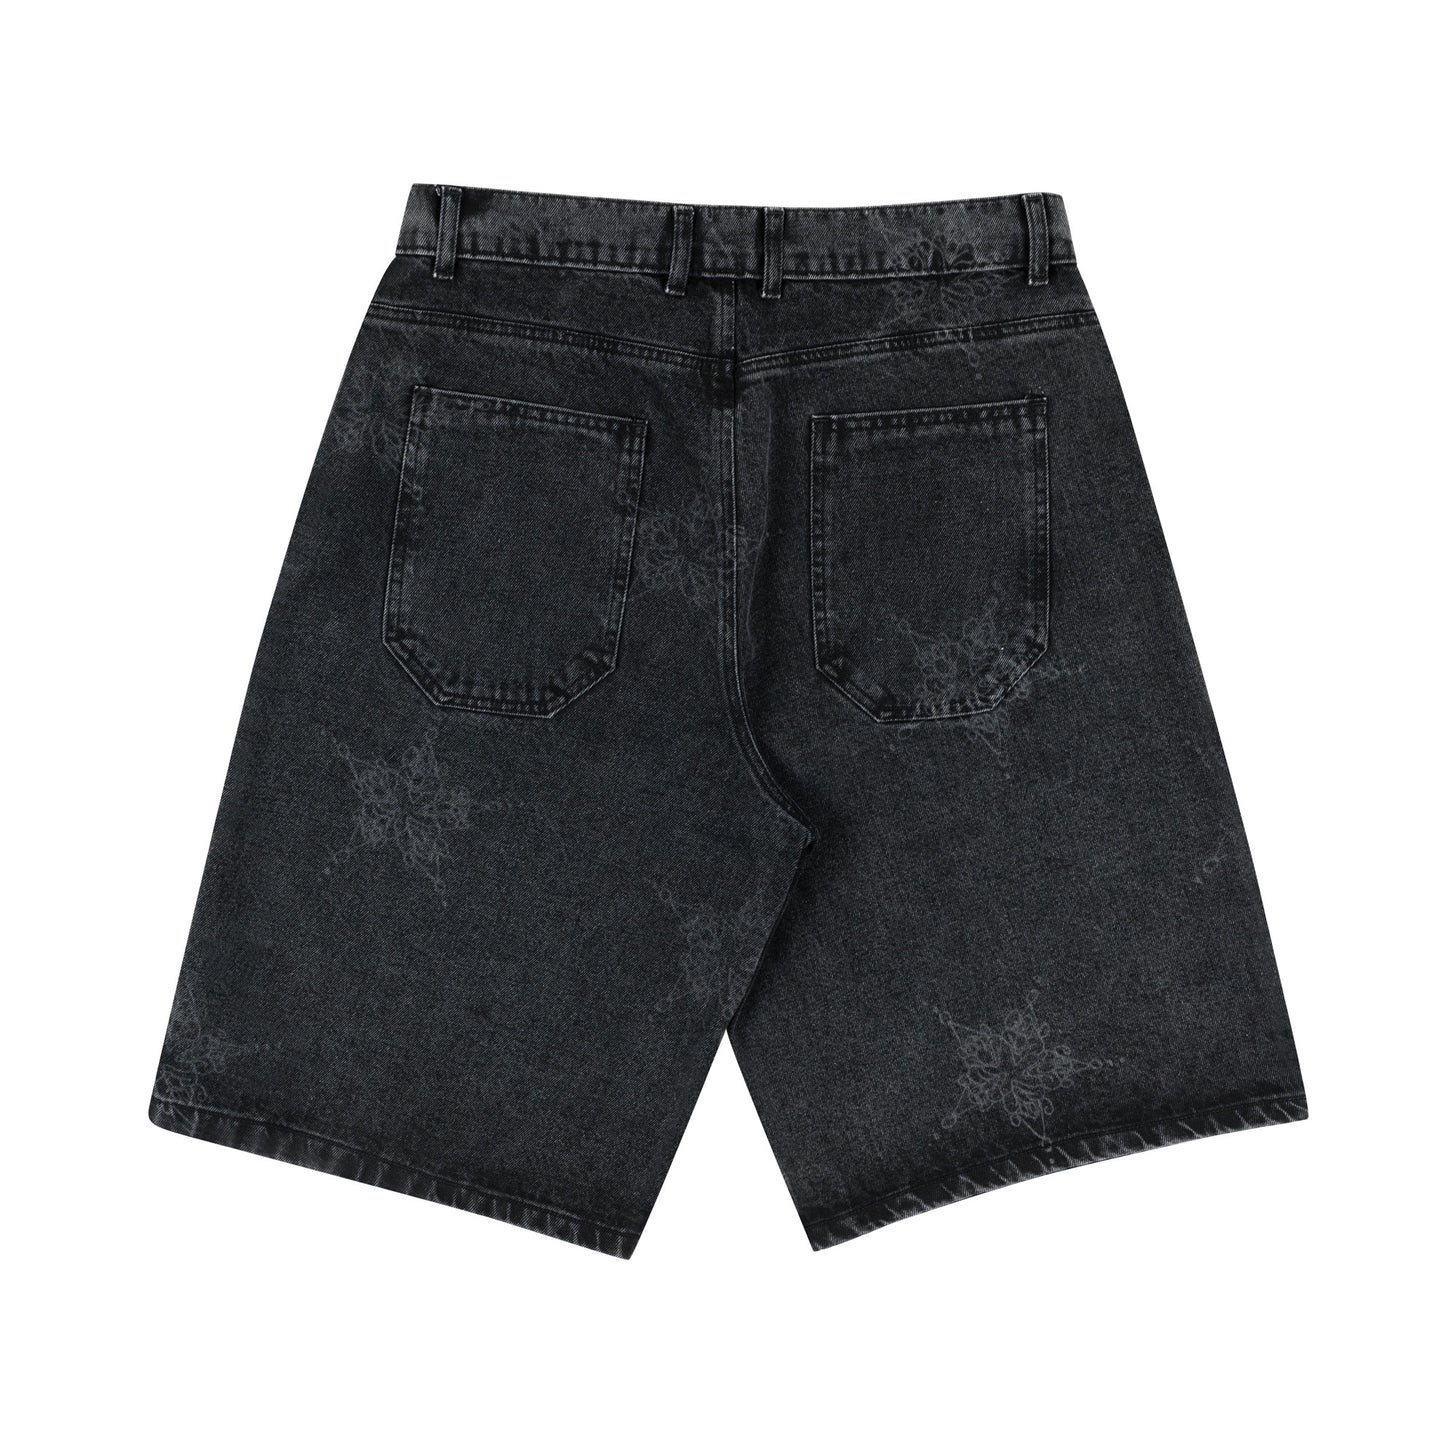 Dingus Star Shorts (Black)